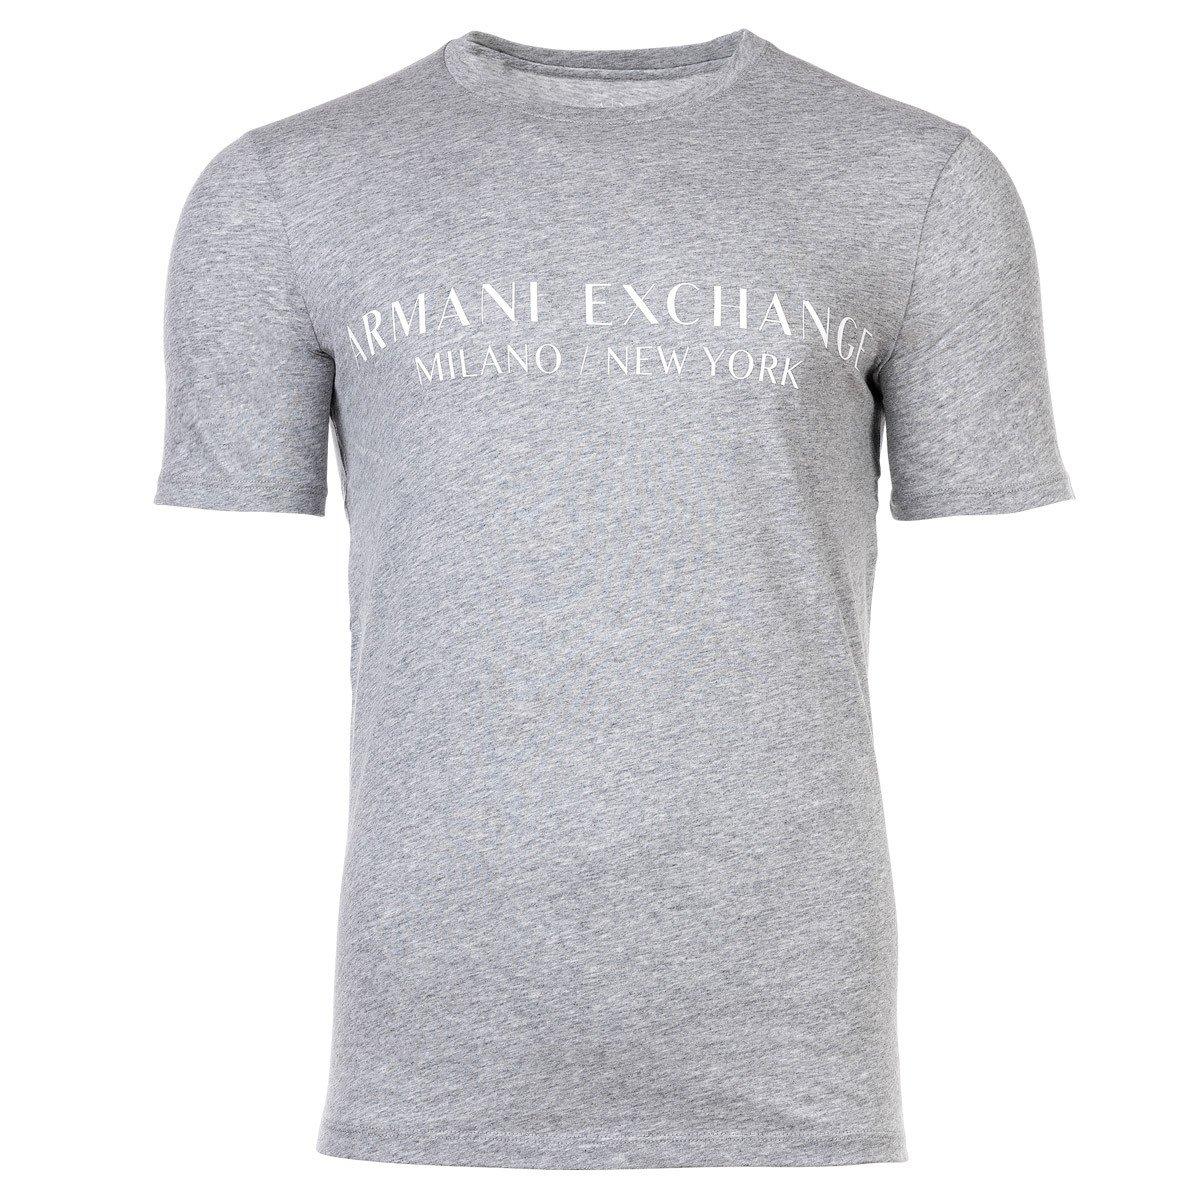 T-shirt Sportlich Bequem Sitzend Herren Grau M von Armani Exchange